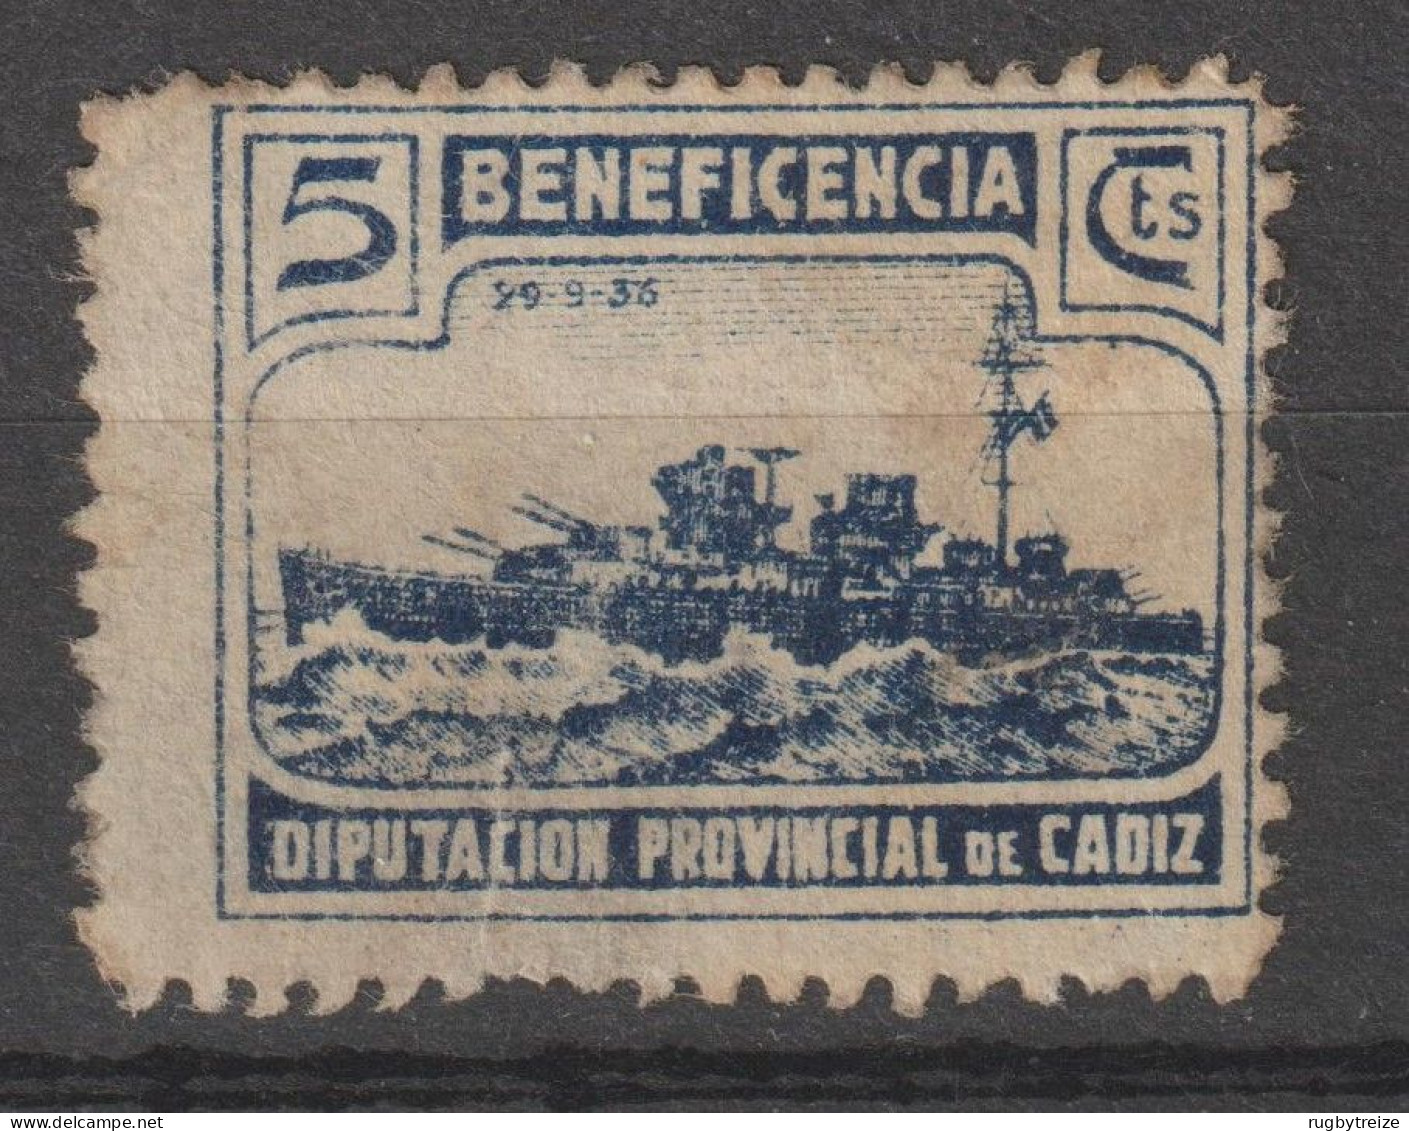 6973 BENEFICENCIA CADIZ 1938 Diputacion Provincial. BATEAU CUIRASSé - Vignettes De La Guerre Civile